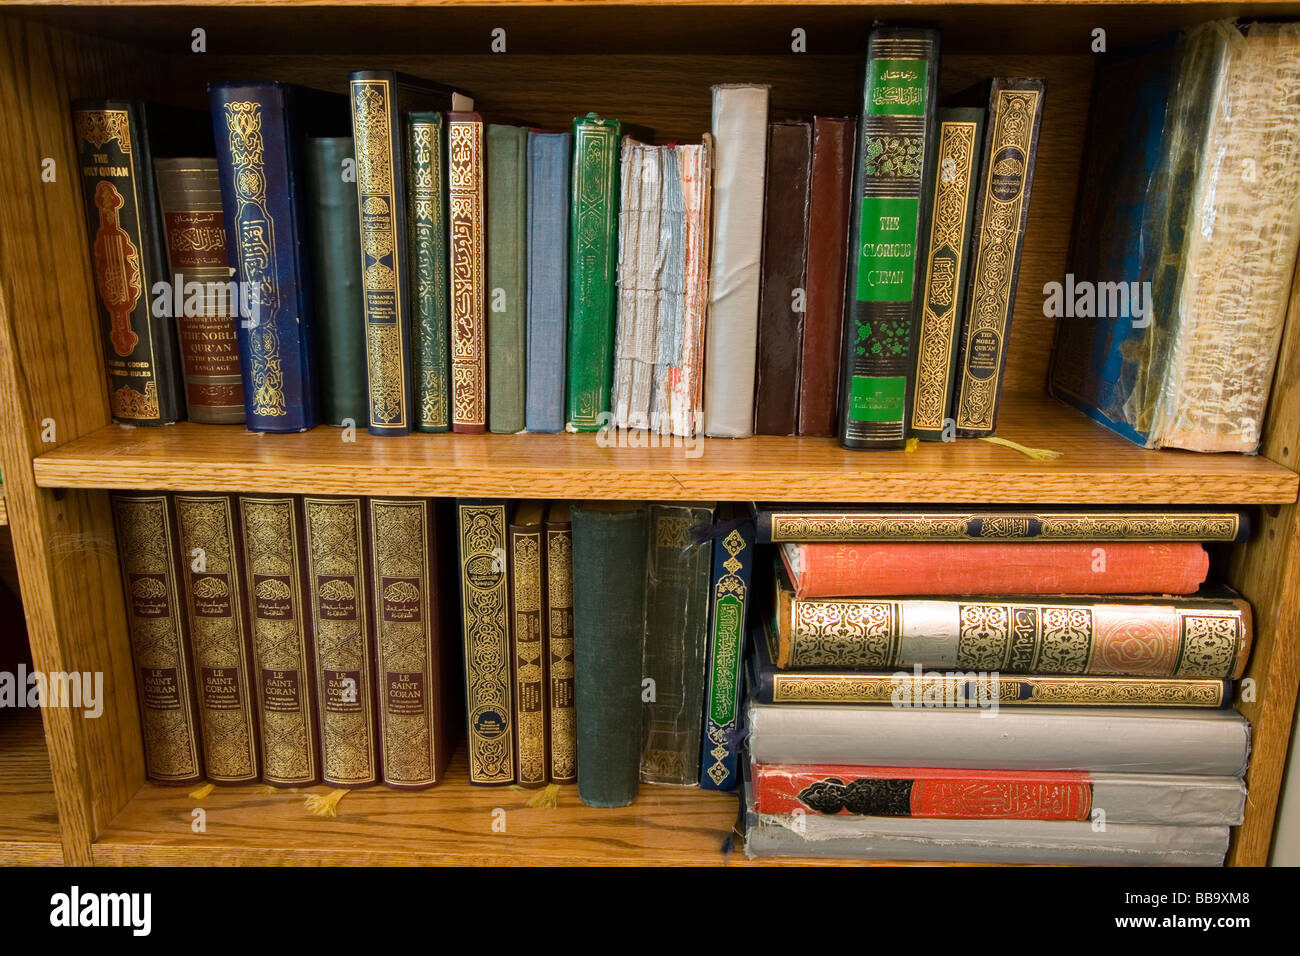 étagère à livres Banque de photographies et d'images à haute résolution -  Alamy